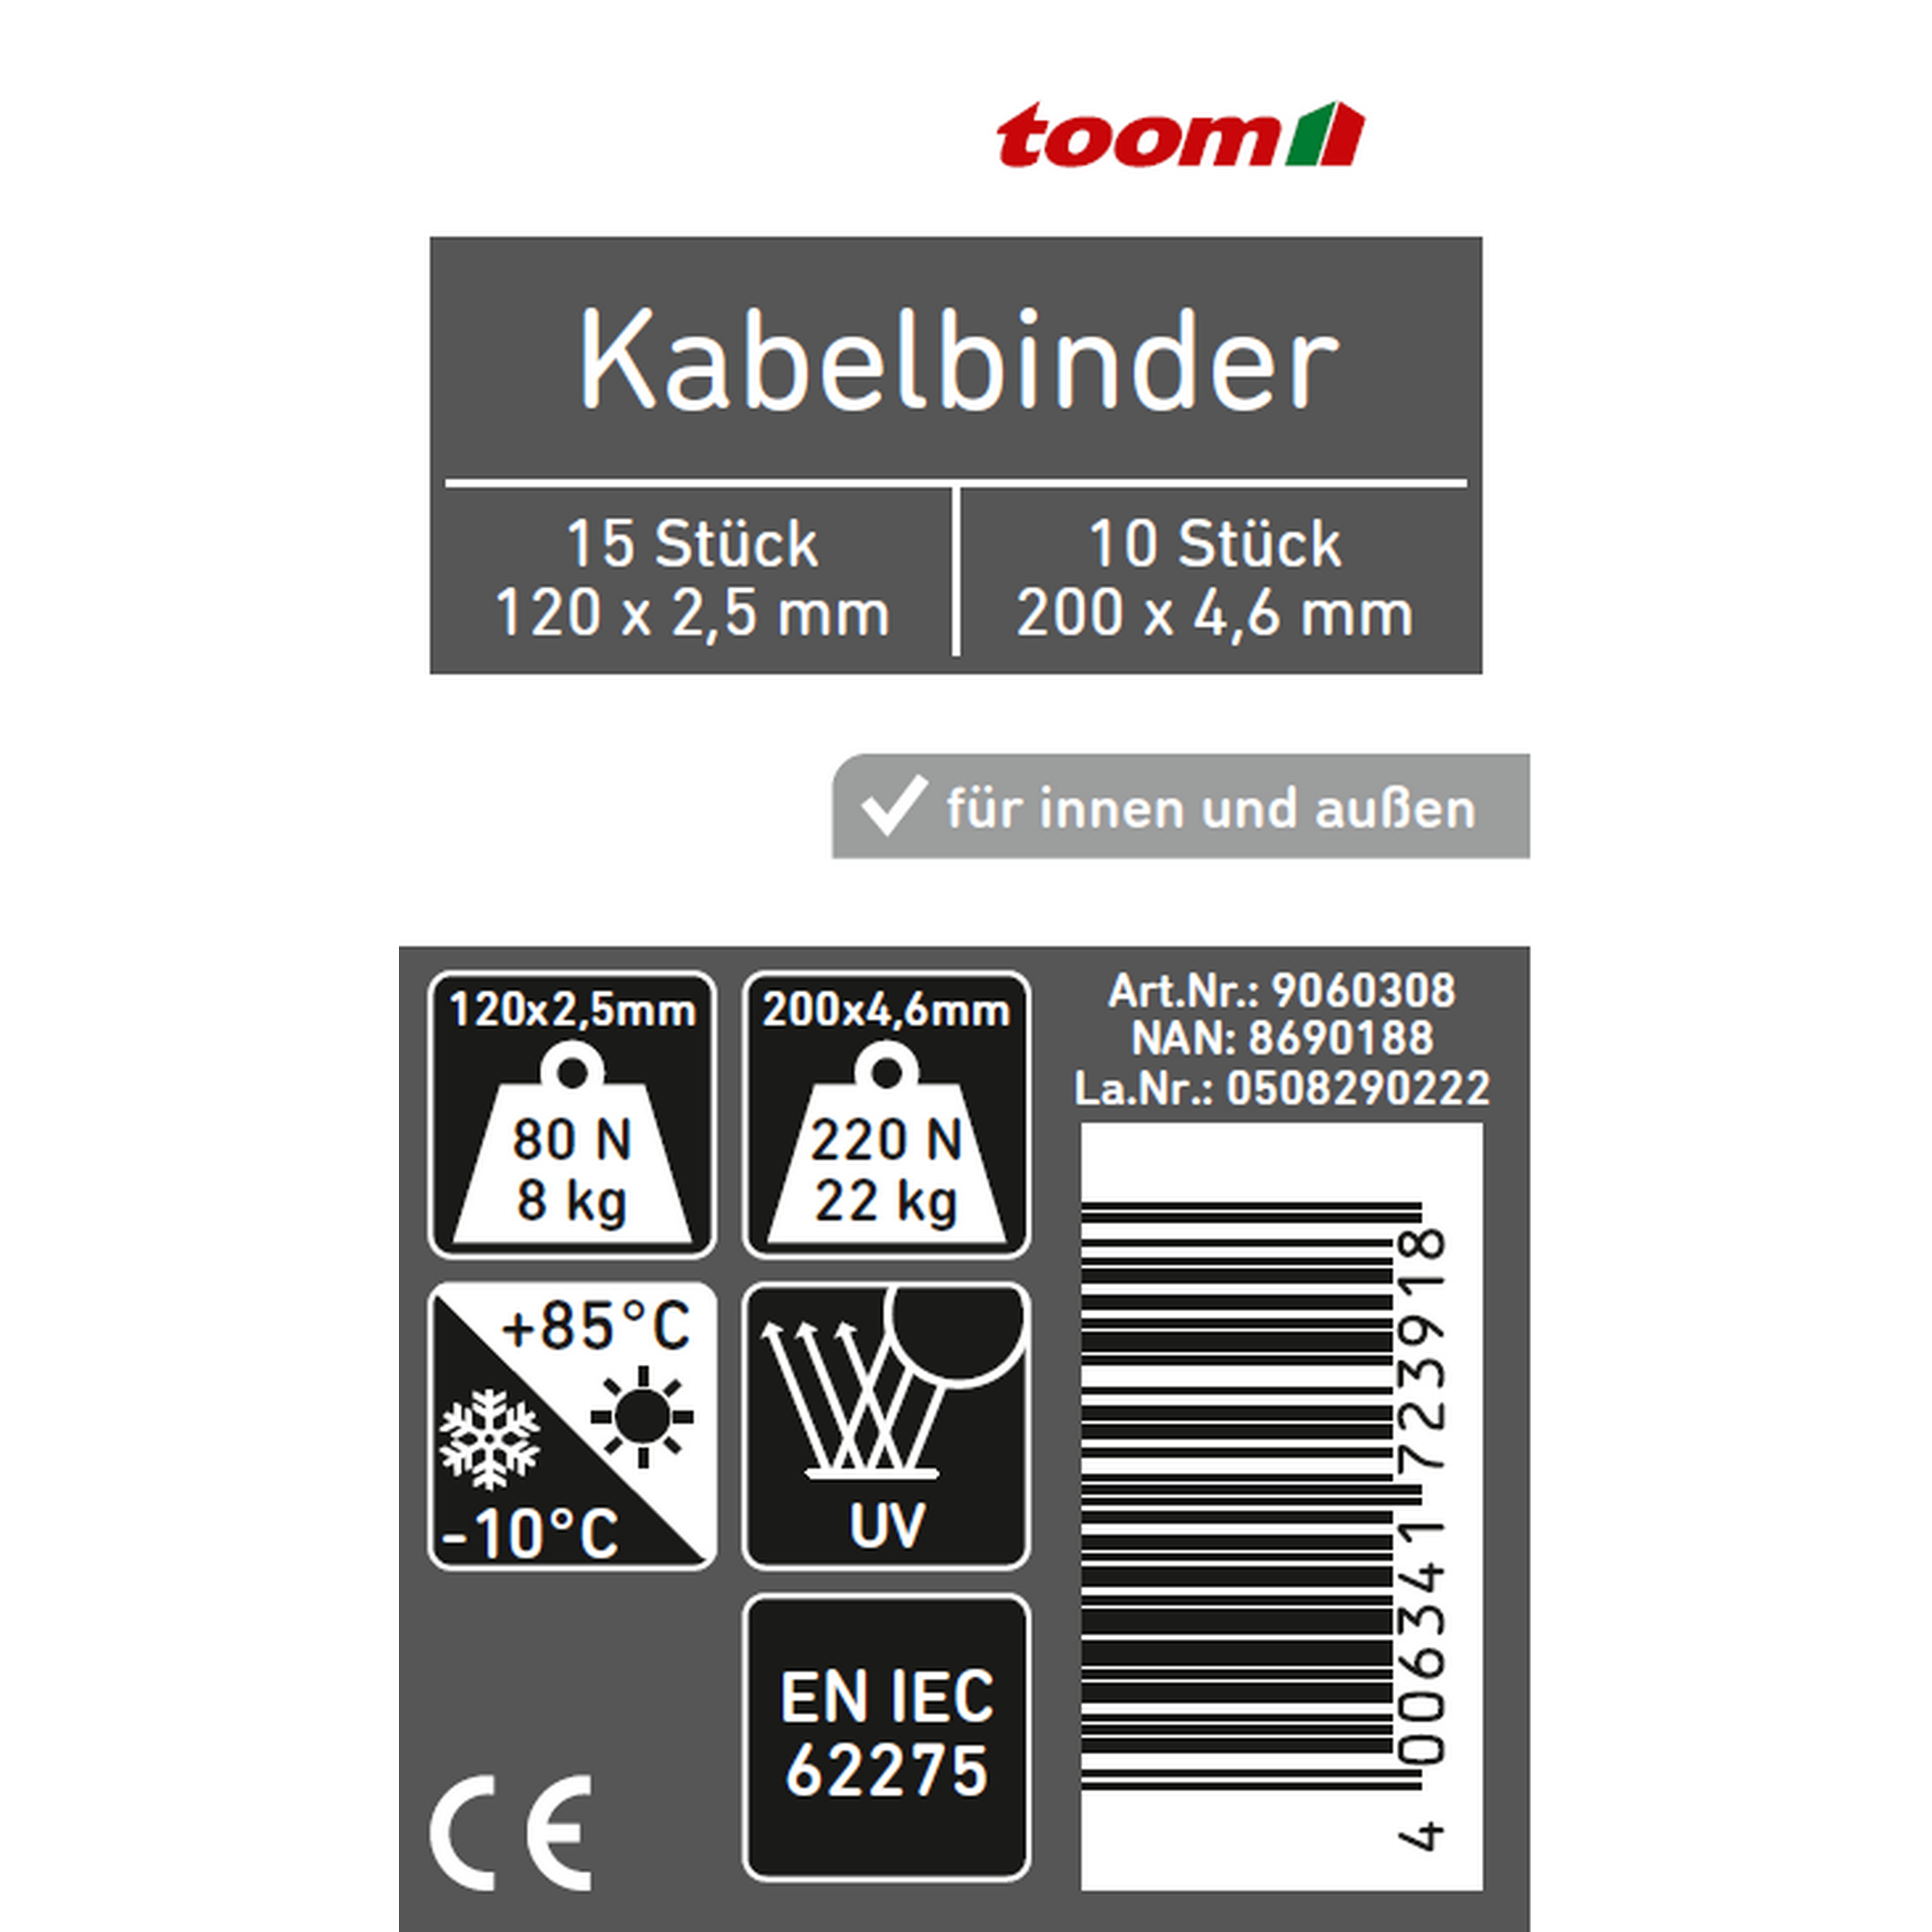 Kabelbinder-Set weiß 2,5 x 120 mm 15 Stück, 4,6 x 200 mm 10 Stück + product picture